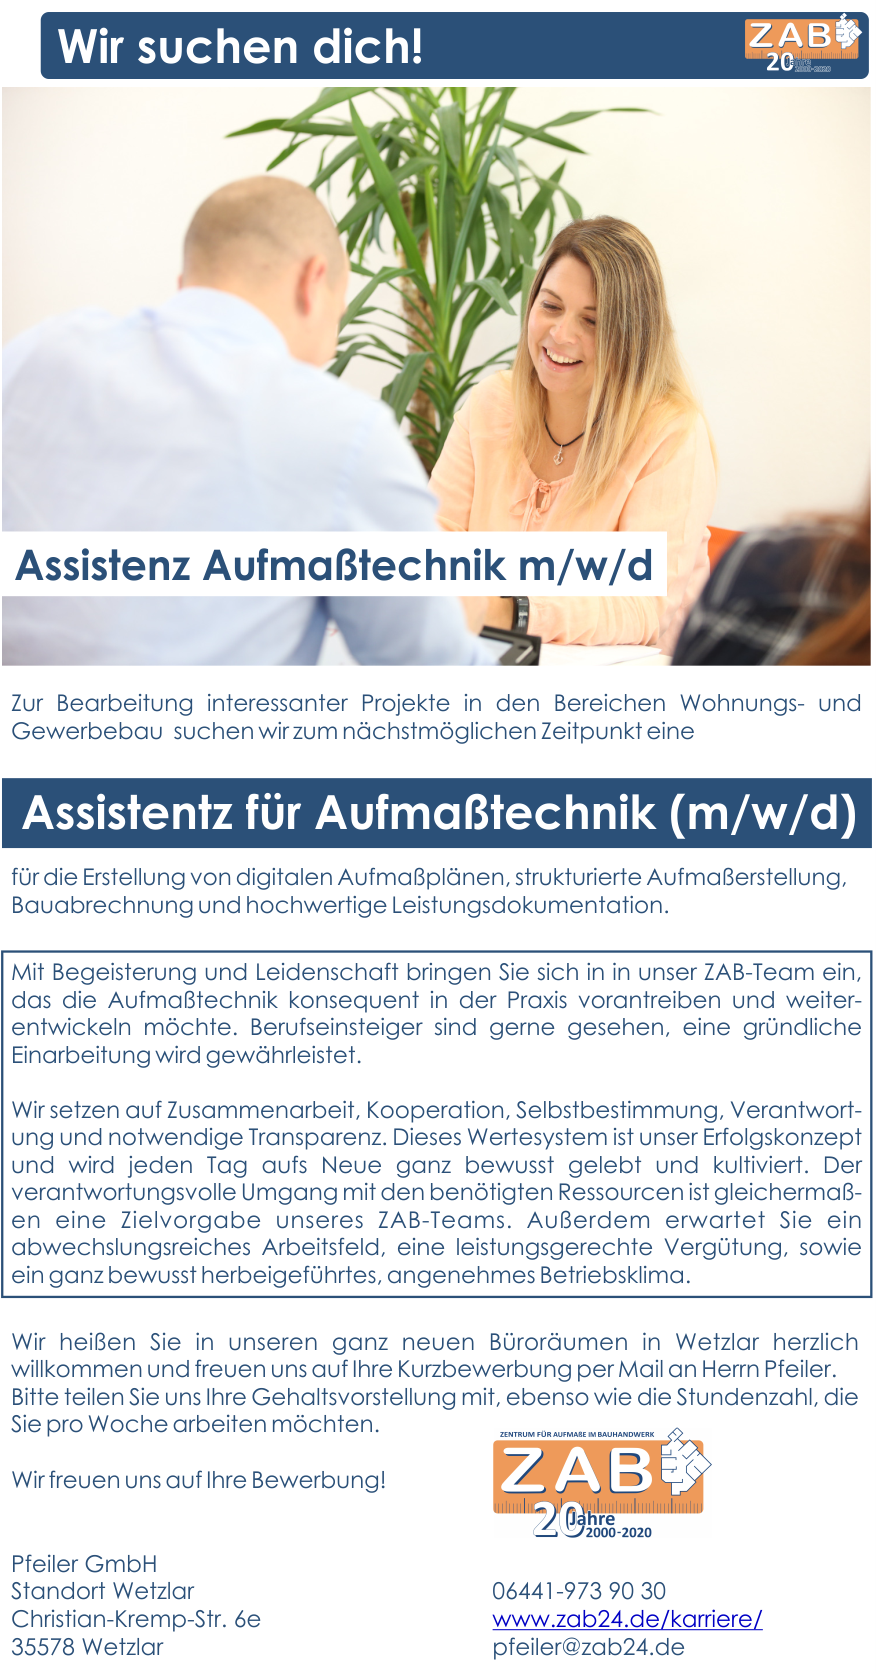 Aufmaßtechniker Karriere Job Stellen bei ZAB Pfeiler Projekt GmbH